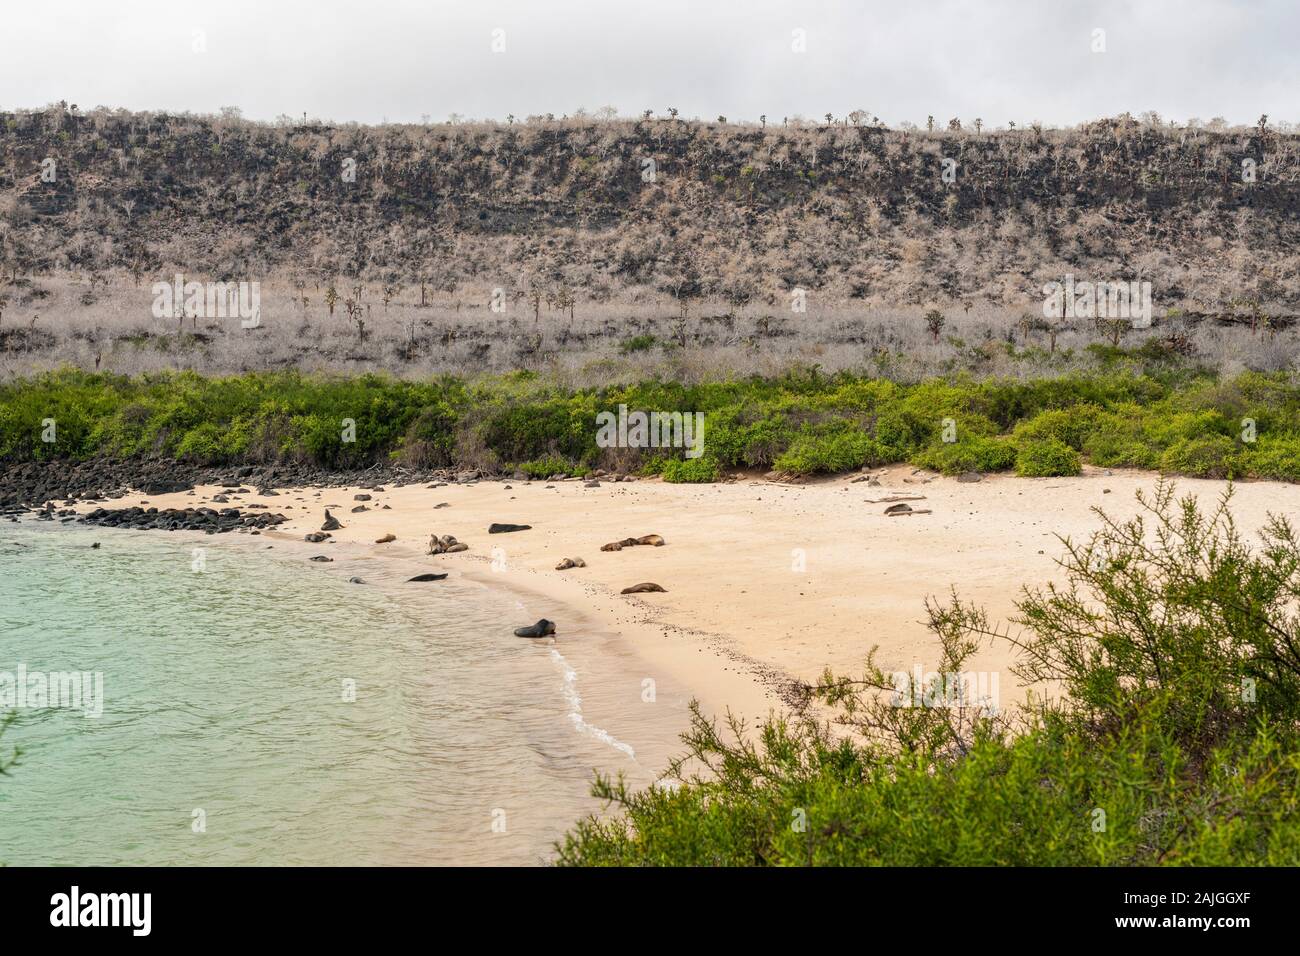 Sea lions on a beach on Sante Fe island, Galapagos, Ecuador. Stock Photo